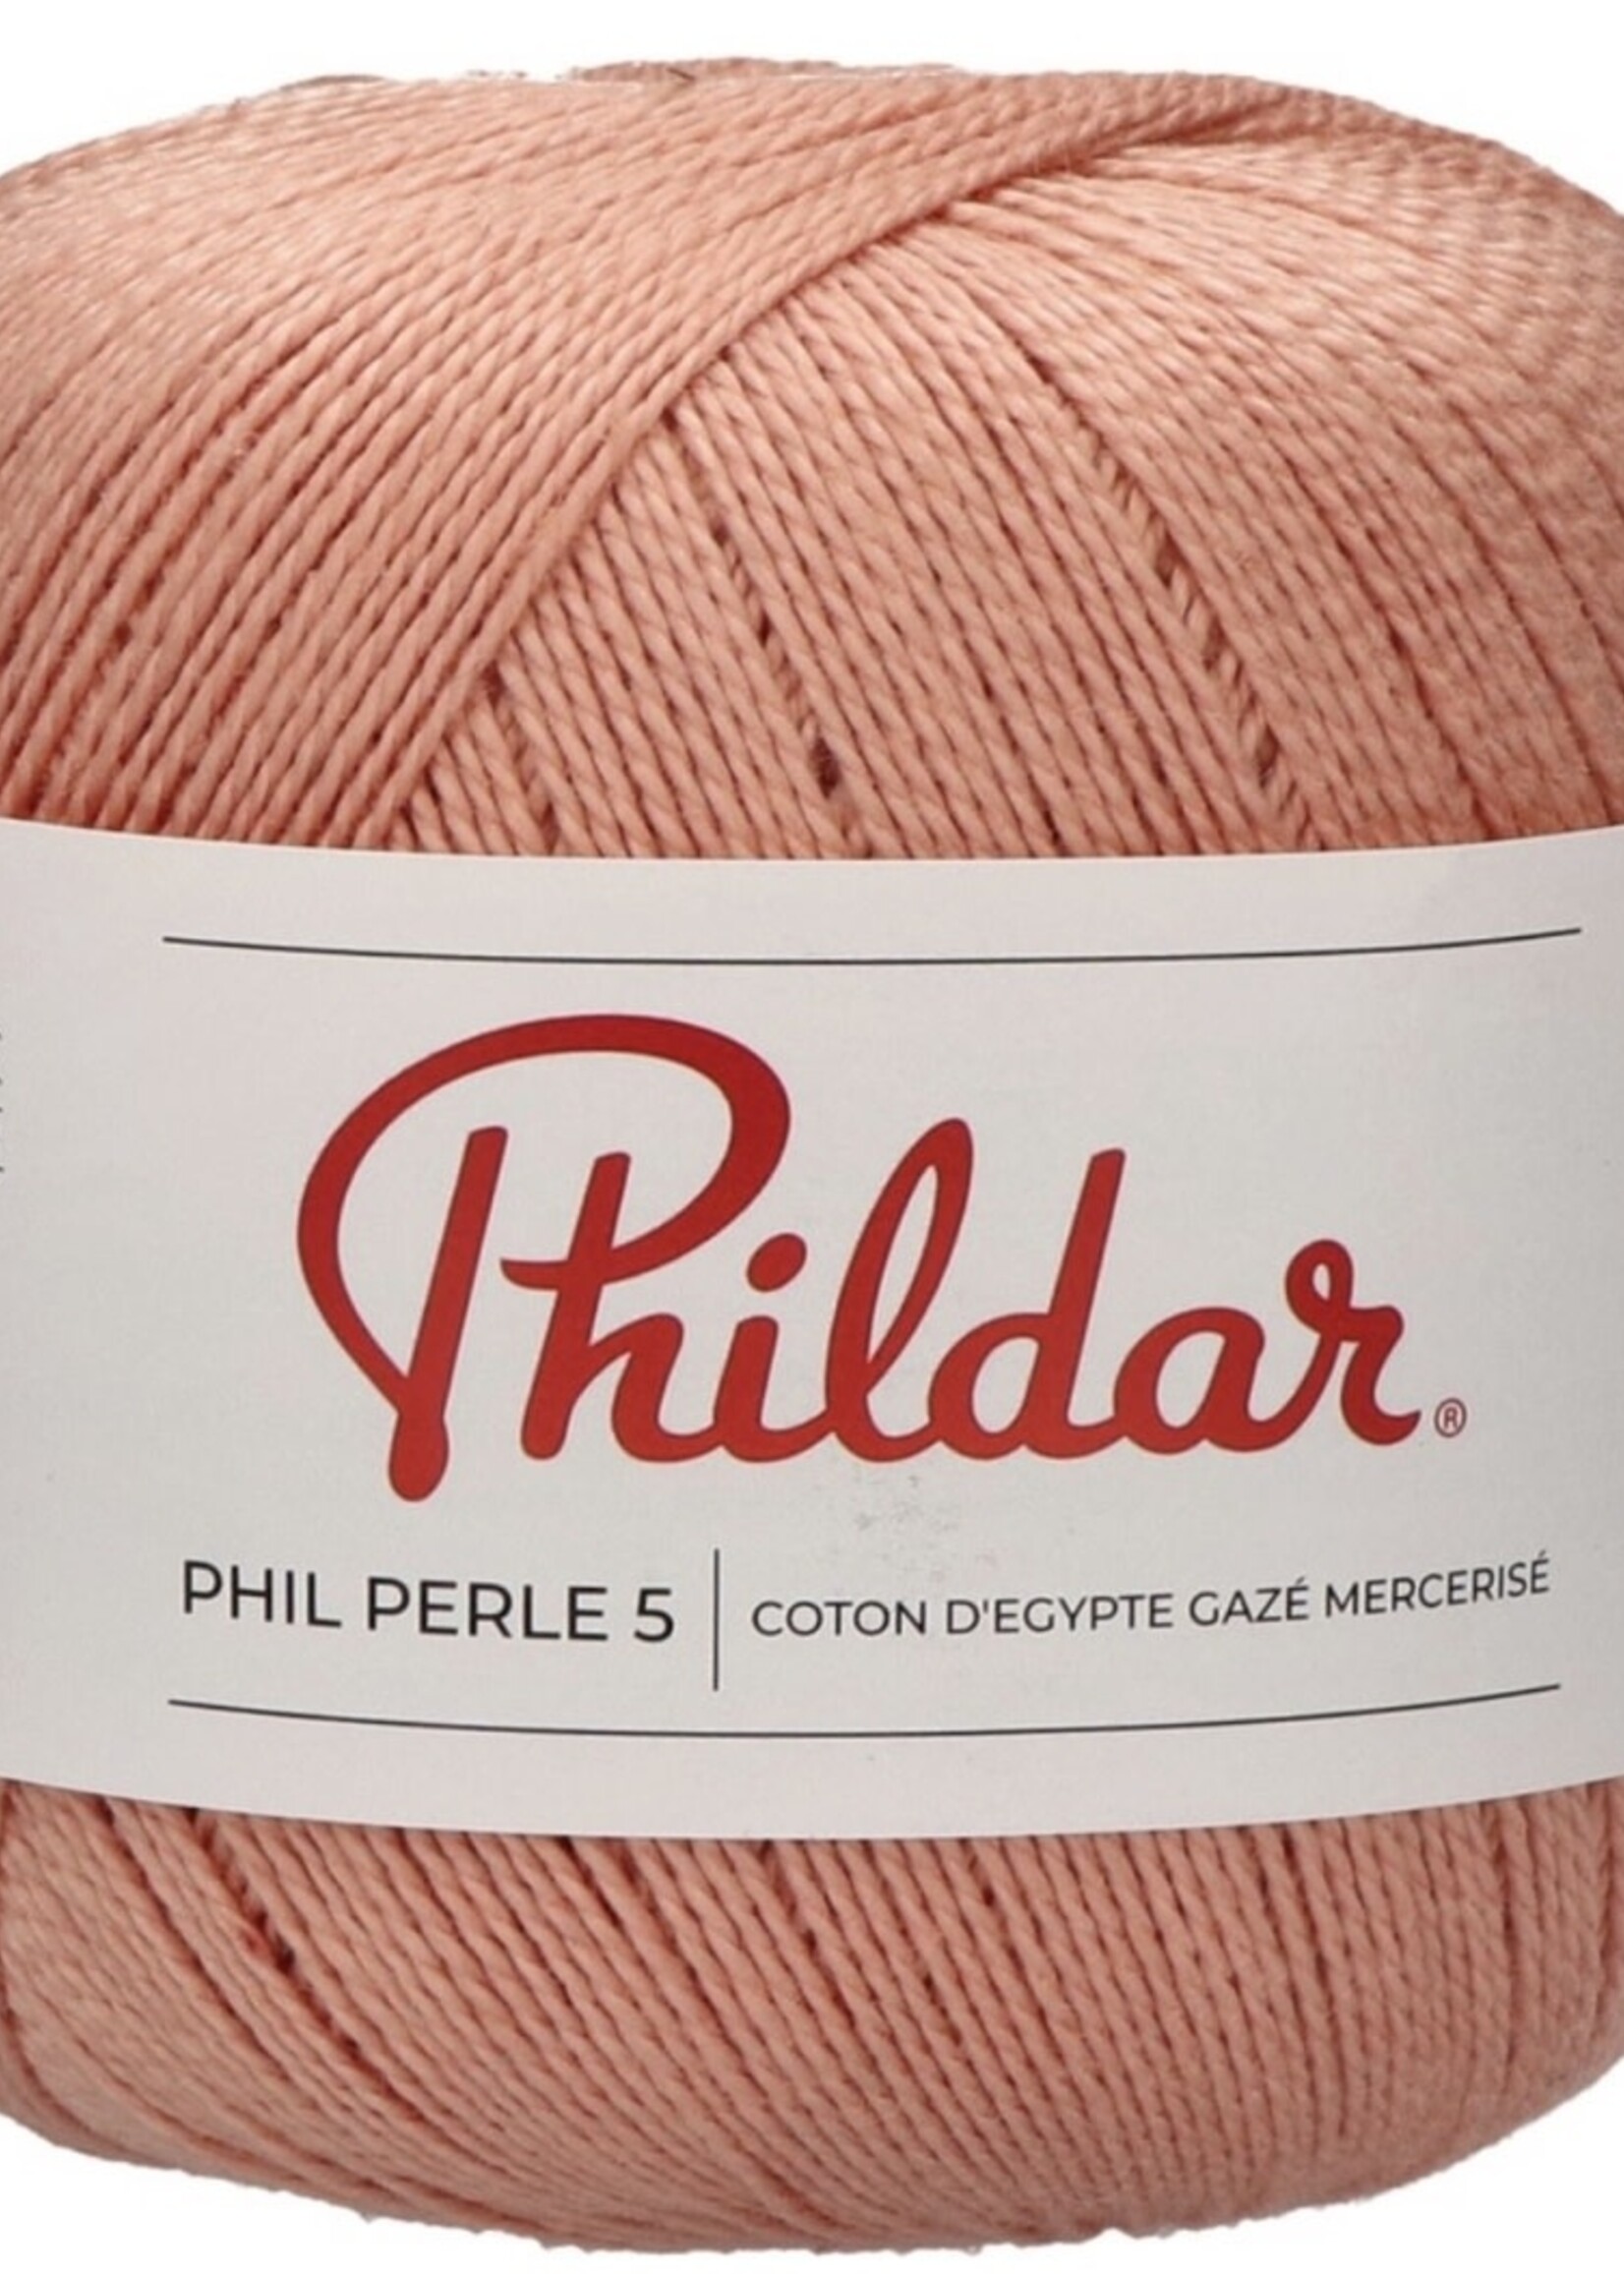 Phildar Phil Perle 5 - Phildar -Peche